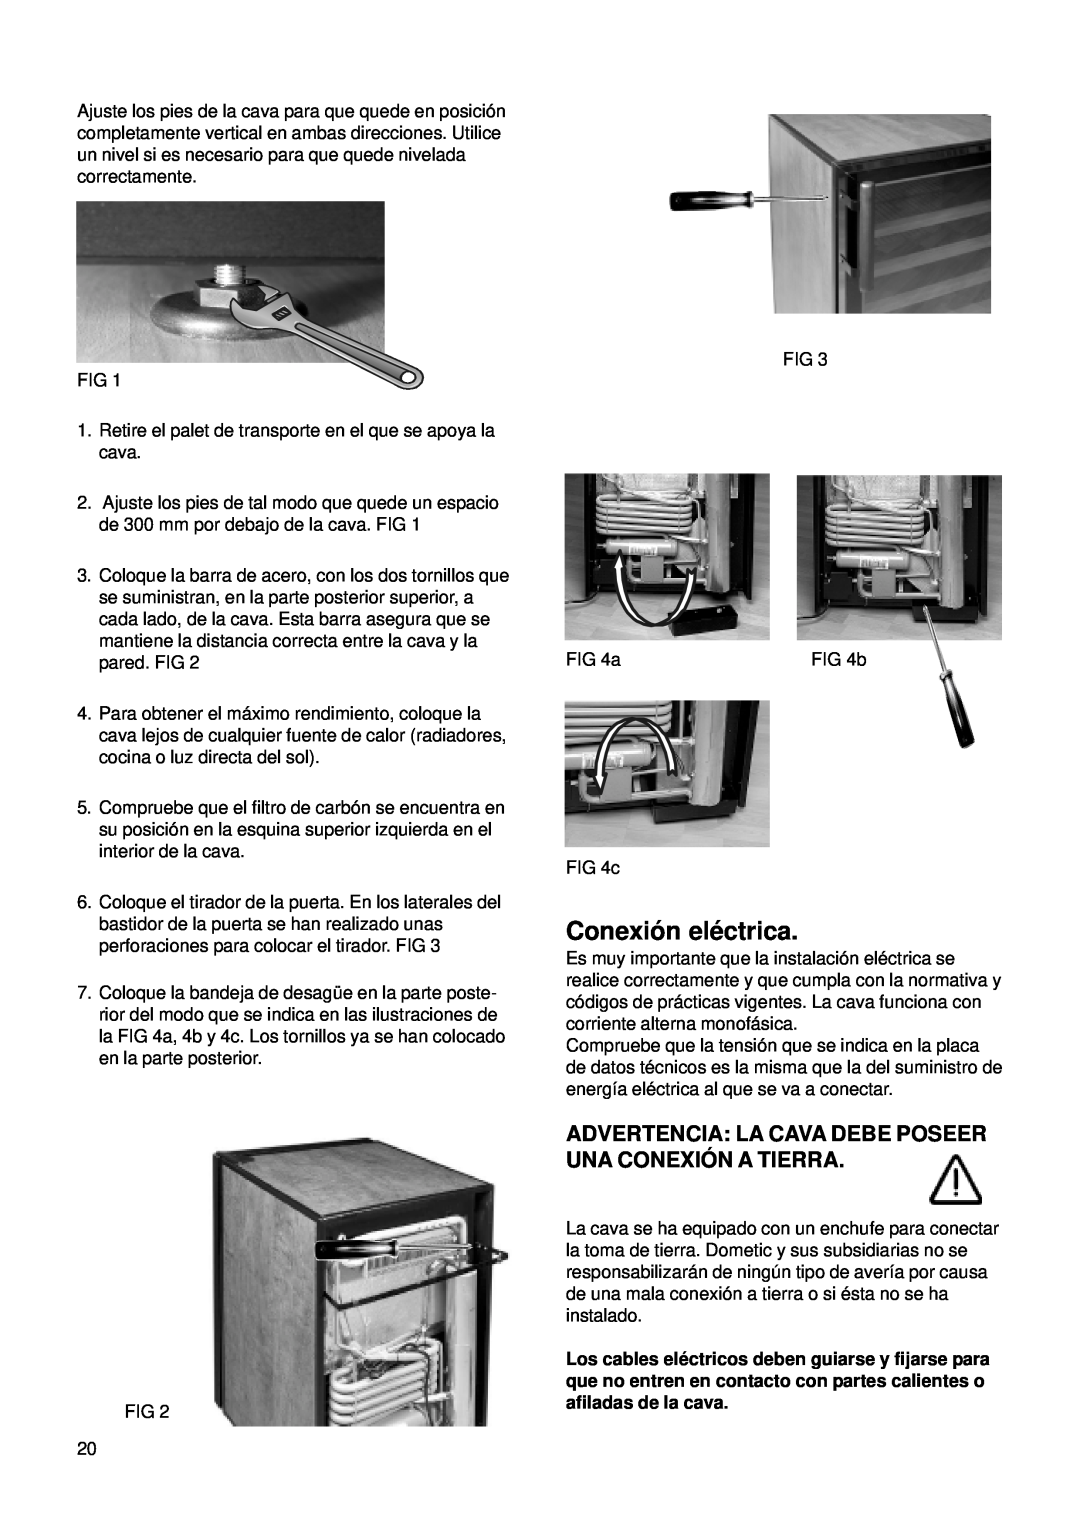 Dometic CS 52 instruction manual Conexió n elé ctrica, Advertencia La Cava Debe Poseer Una Conexió N A Tierra 